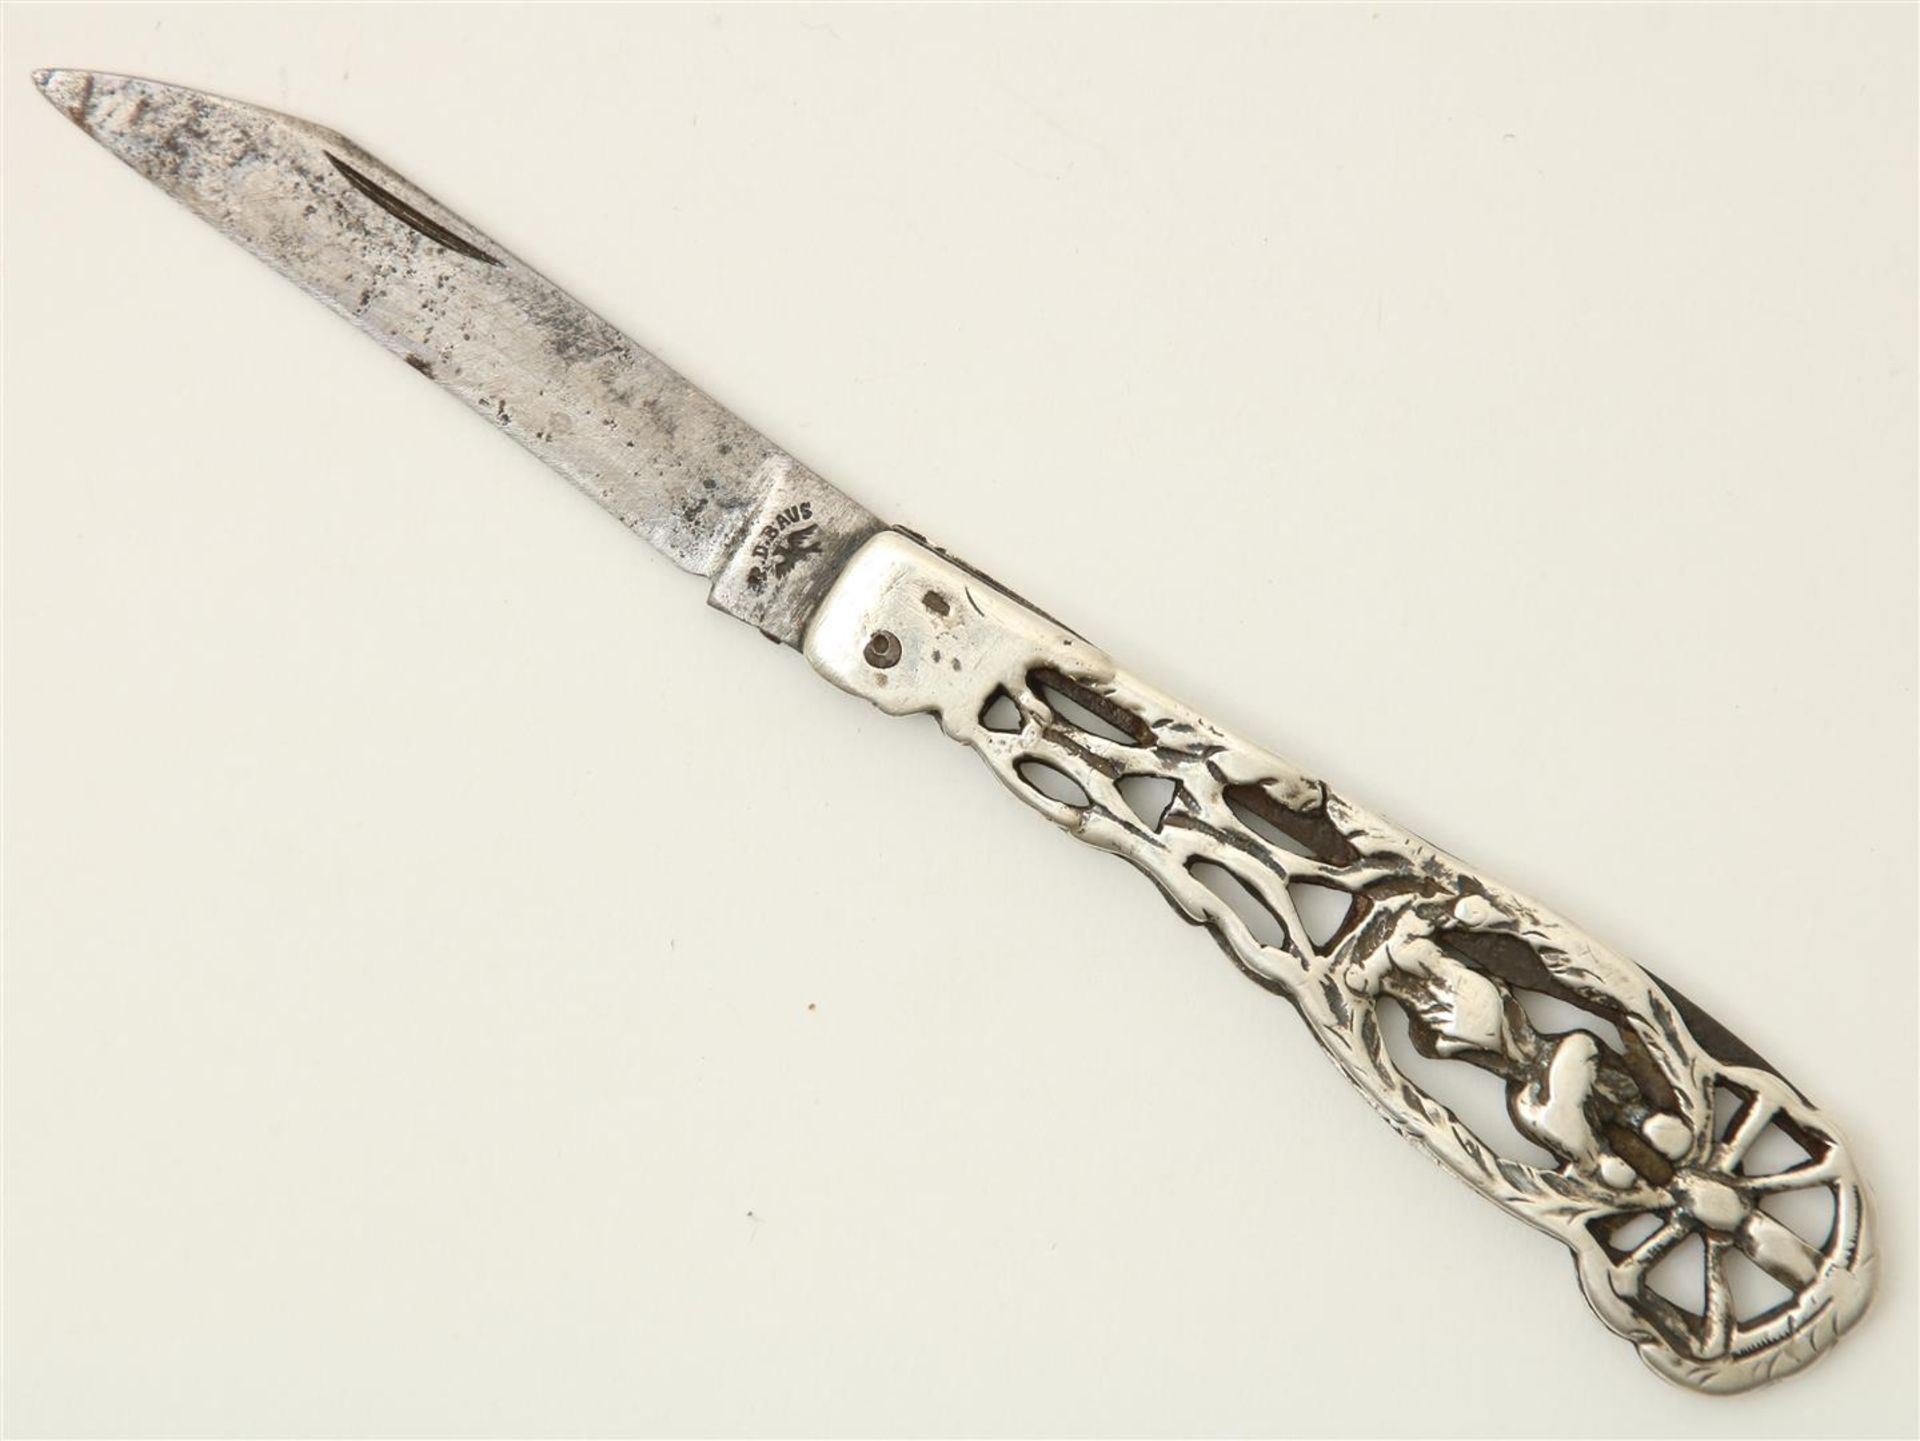 Silver pocket knife, “P.D. BAUS”